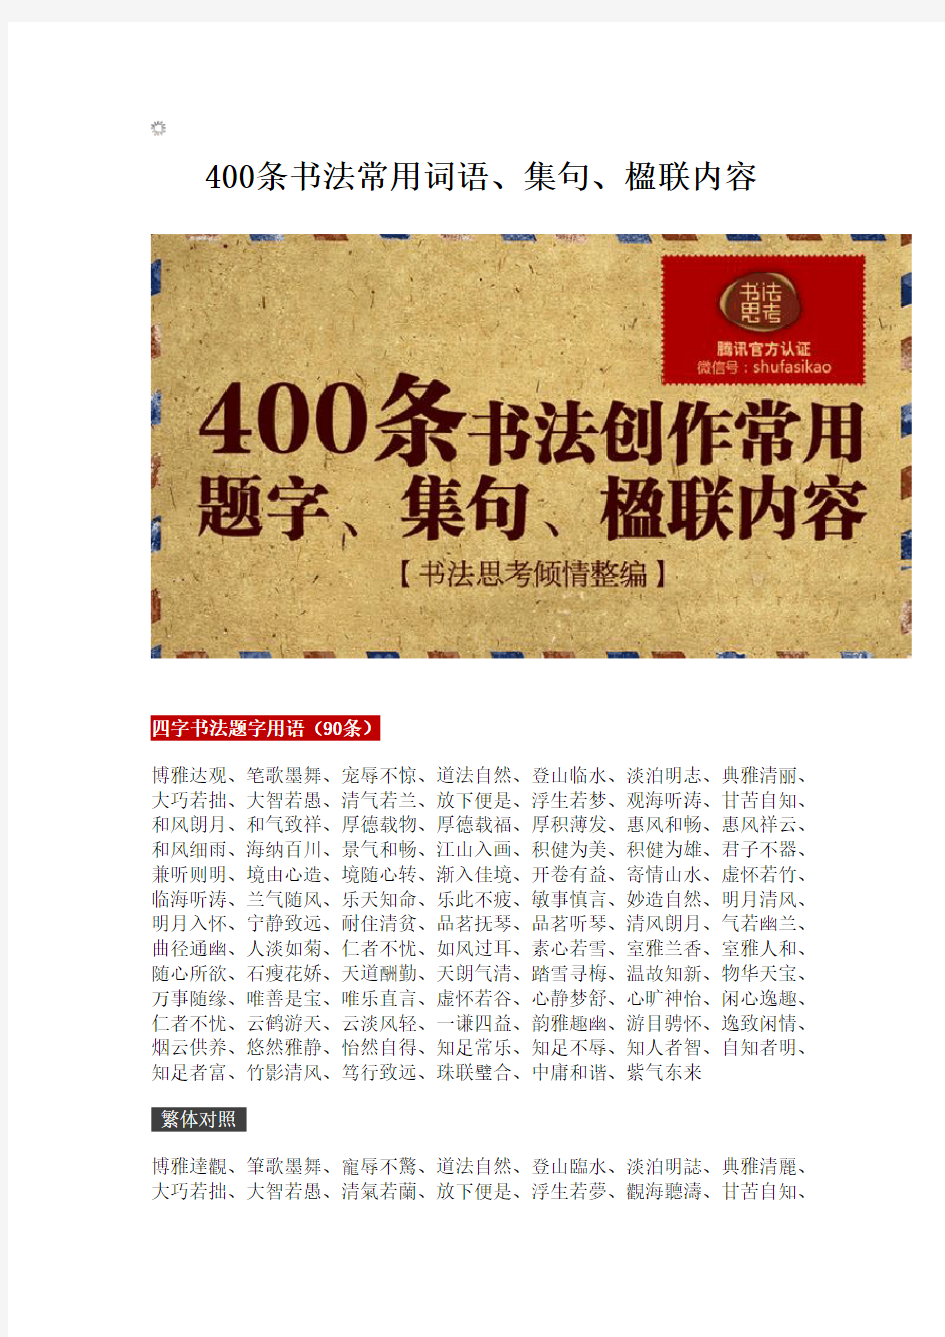 400条书法常用词语、集句、楹联内容——东方星书法吴章波